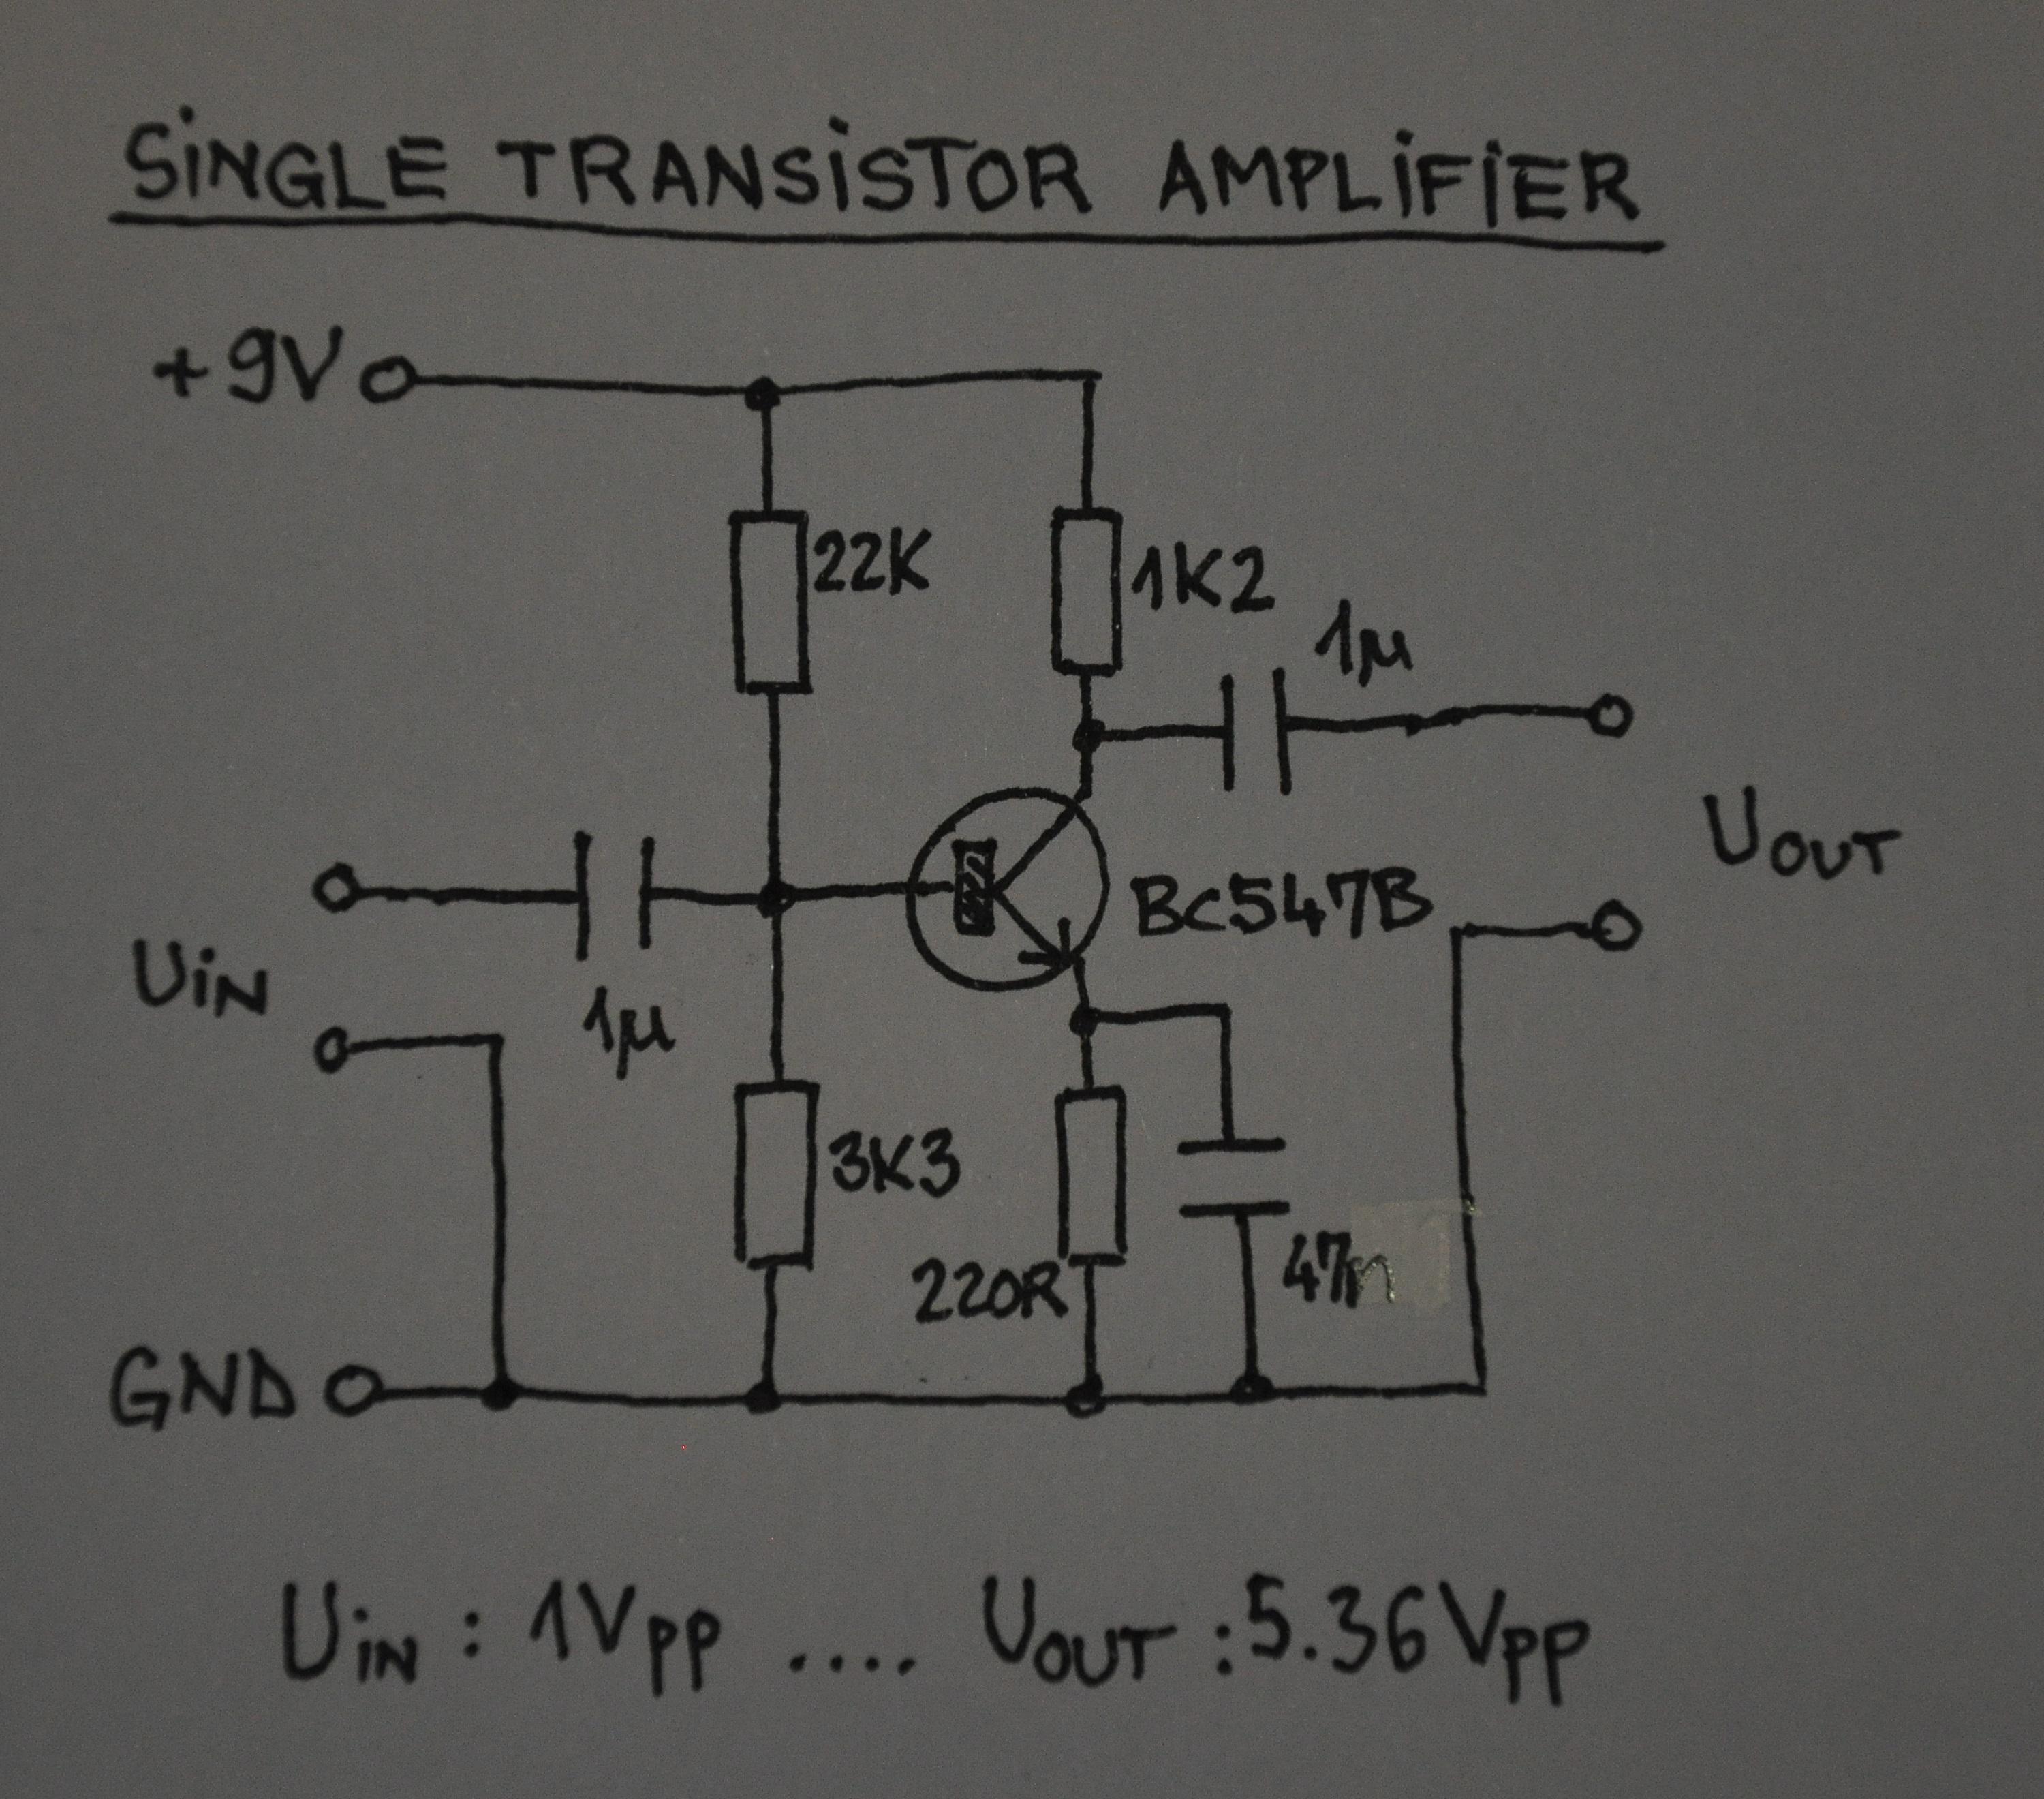 TransistorAmplifier002.JPG